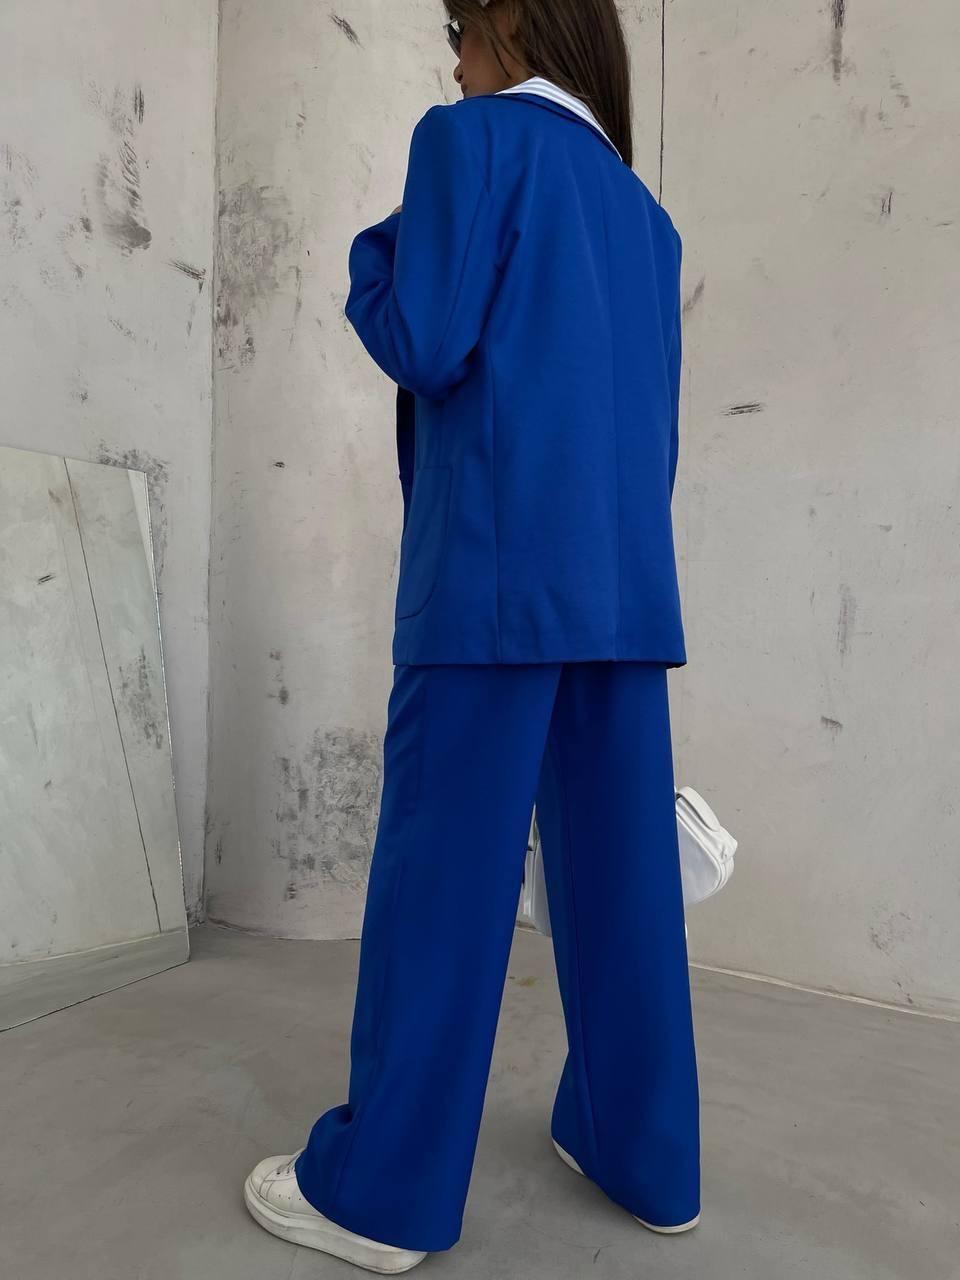 BK2183 - Waist Folded Suit